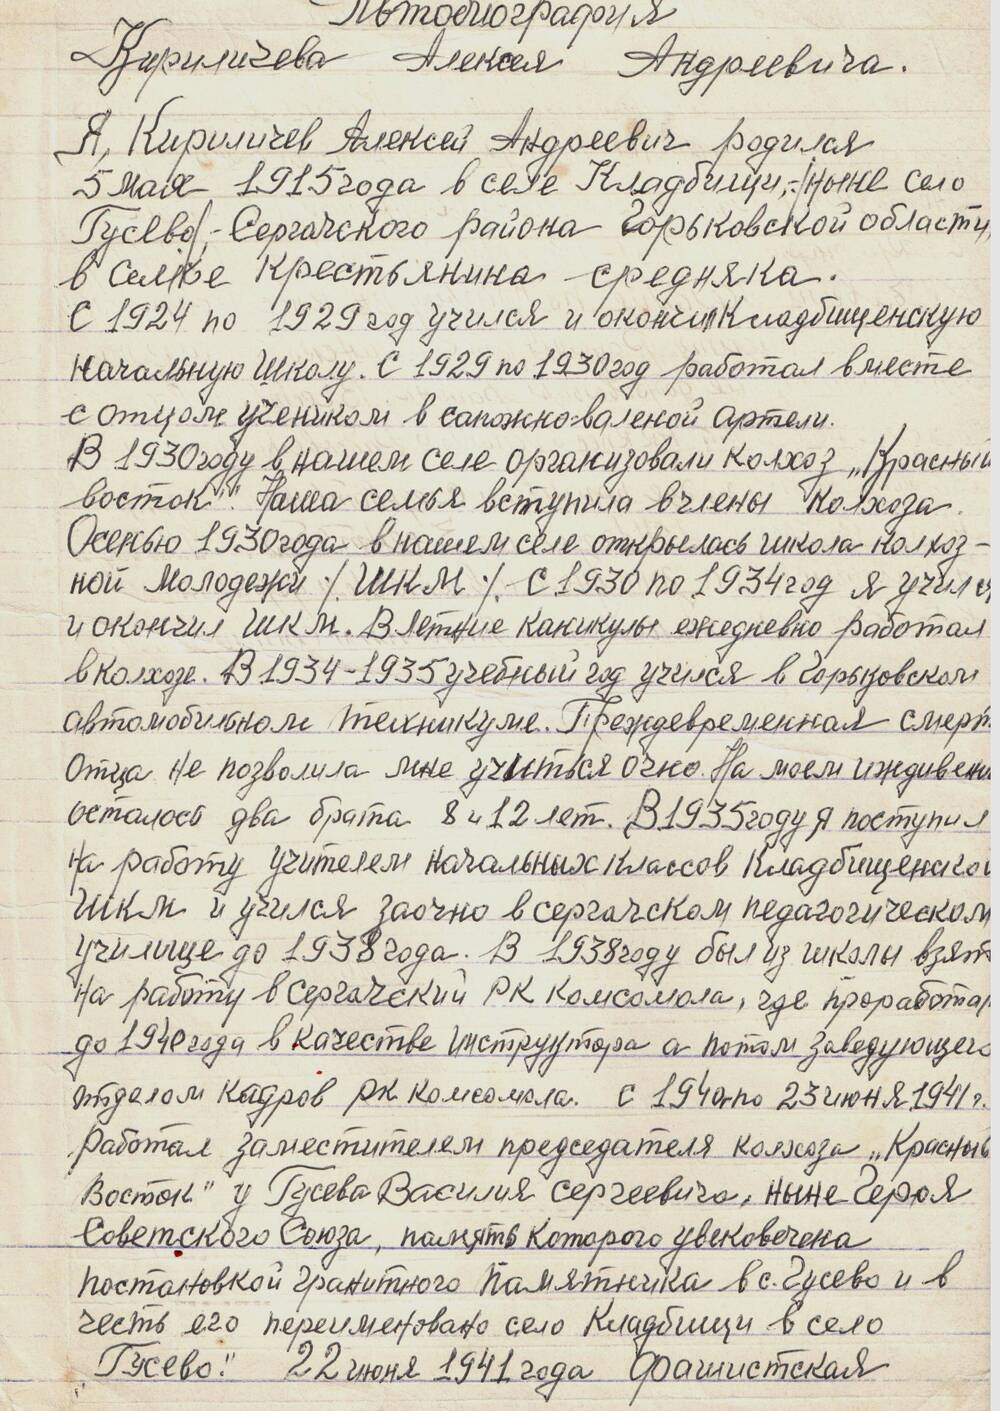 Автобиография Кириличева А.А. от 04.04.1977 г.